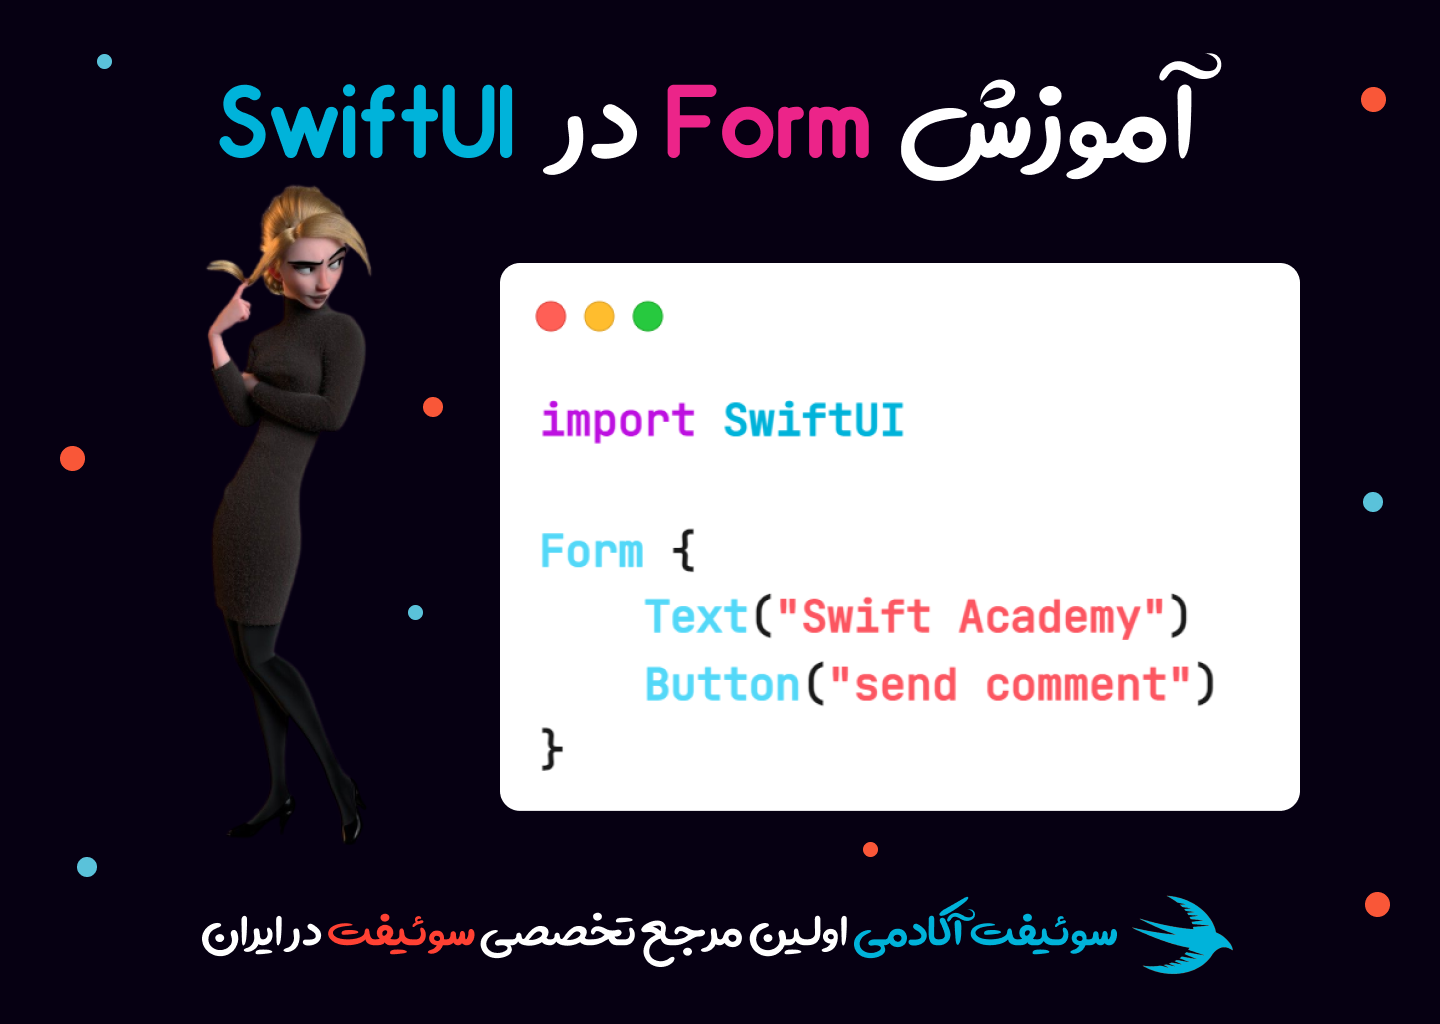 دریافت اطلاعات کاربر به کمک Form در SwiftUI